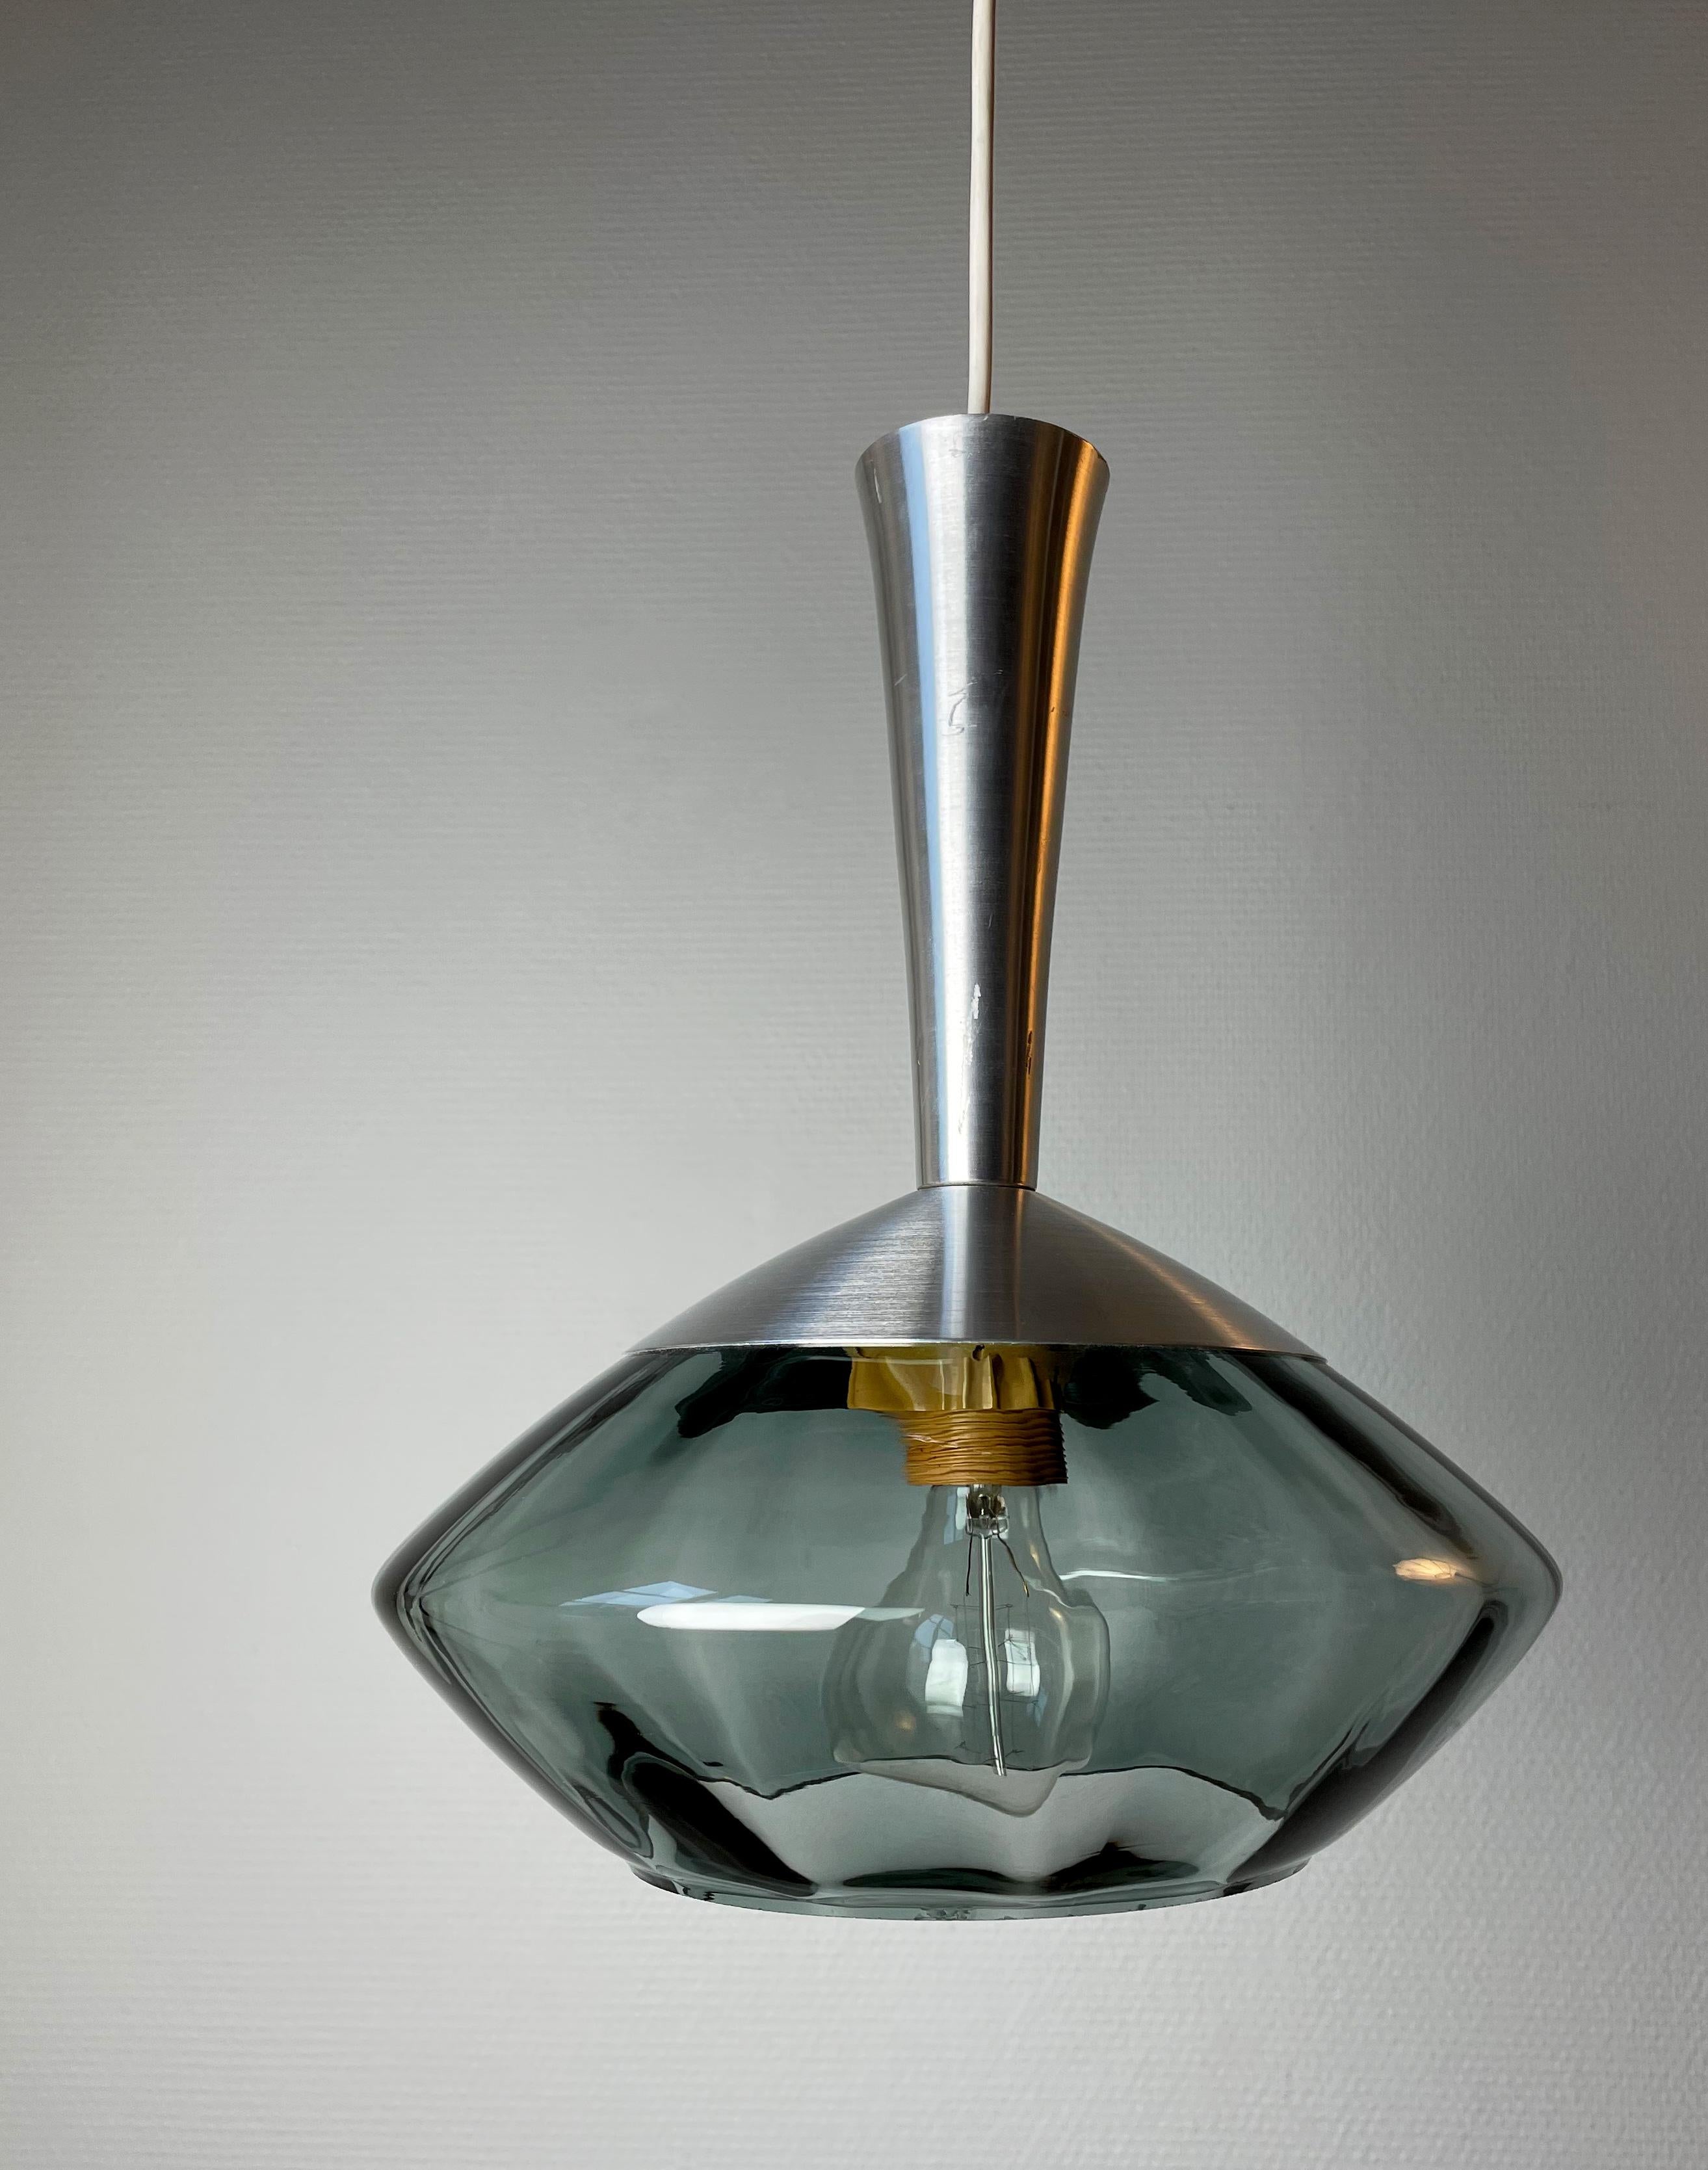 Pendentif en métal et verre soufflé gris bleuté fumé de style moderne du milieu du siècle dernier, fabriqué par le Suédois Orrefors à la fin des années 1950. La partie supérieure en métal brillant se trouve au-dessus du verre qui est lisse à